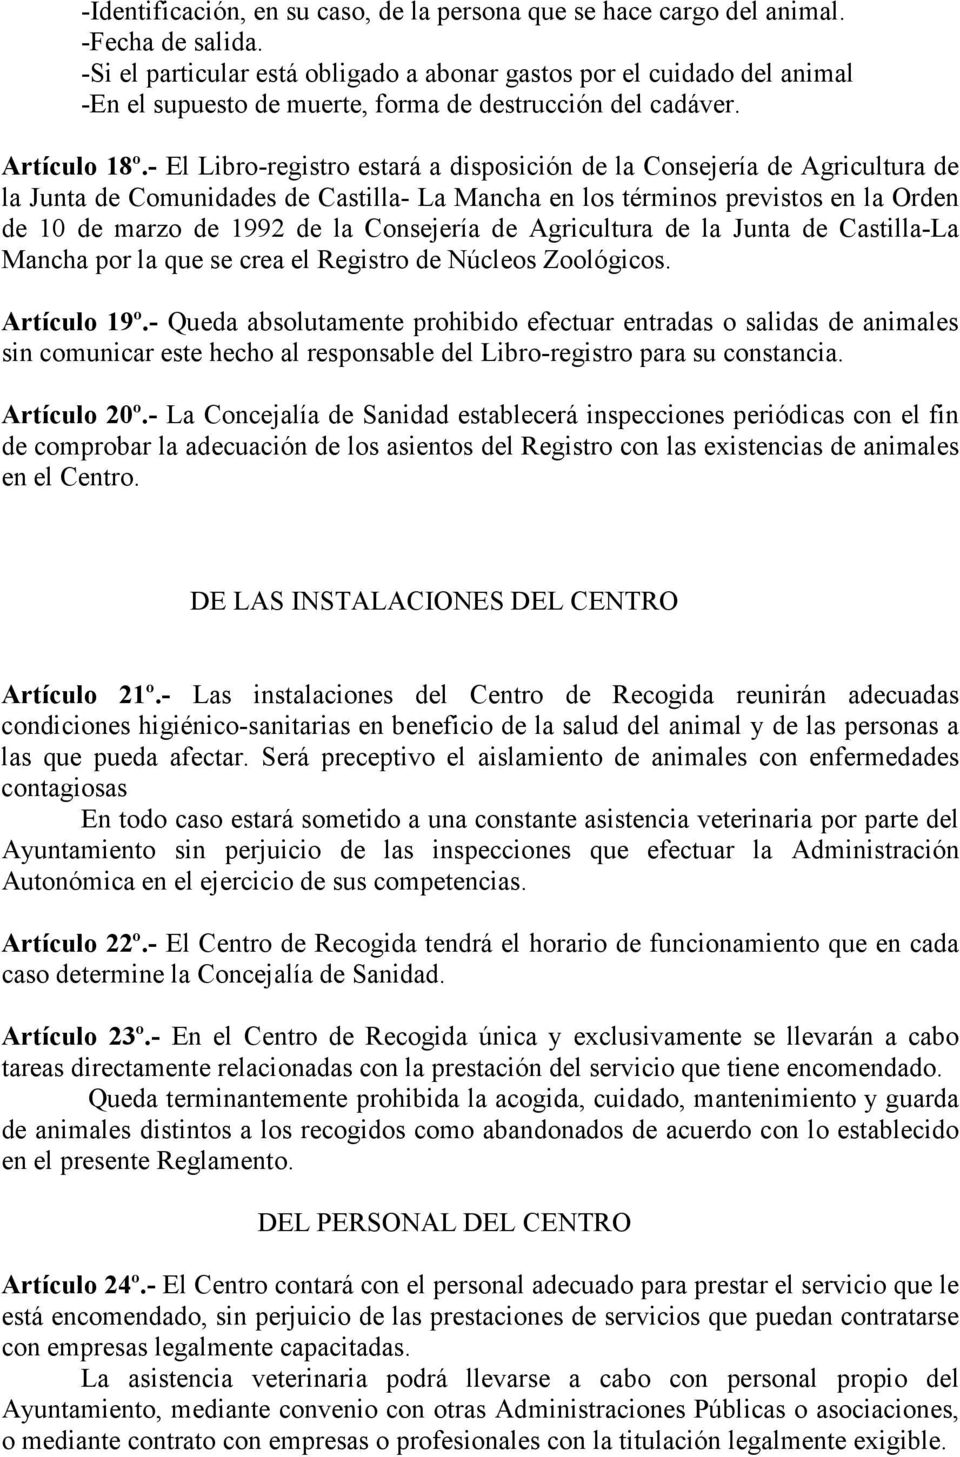 - El Libro-registro estará a disposición de la Consejería de Agricultura de la Junta de Comunidades de Castilla- La Mancha en los términos previstos en la Orden de 10 de marzo de 1992 de la